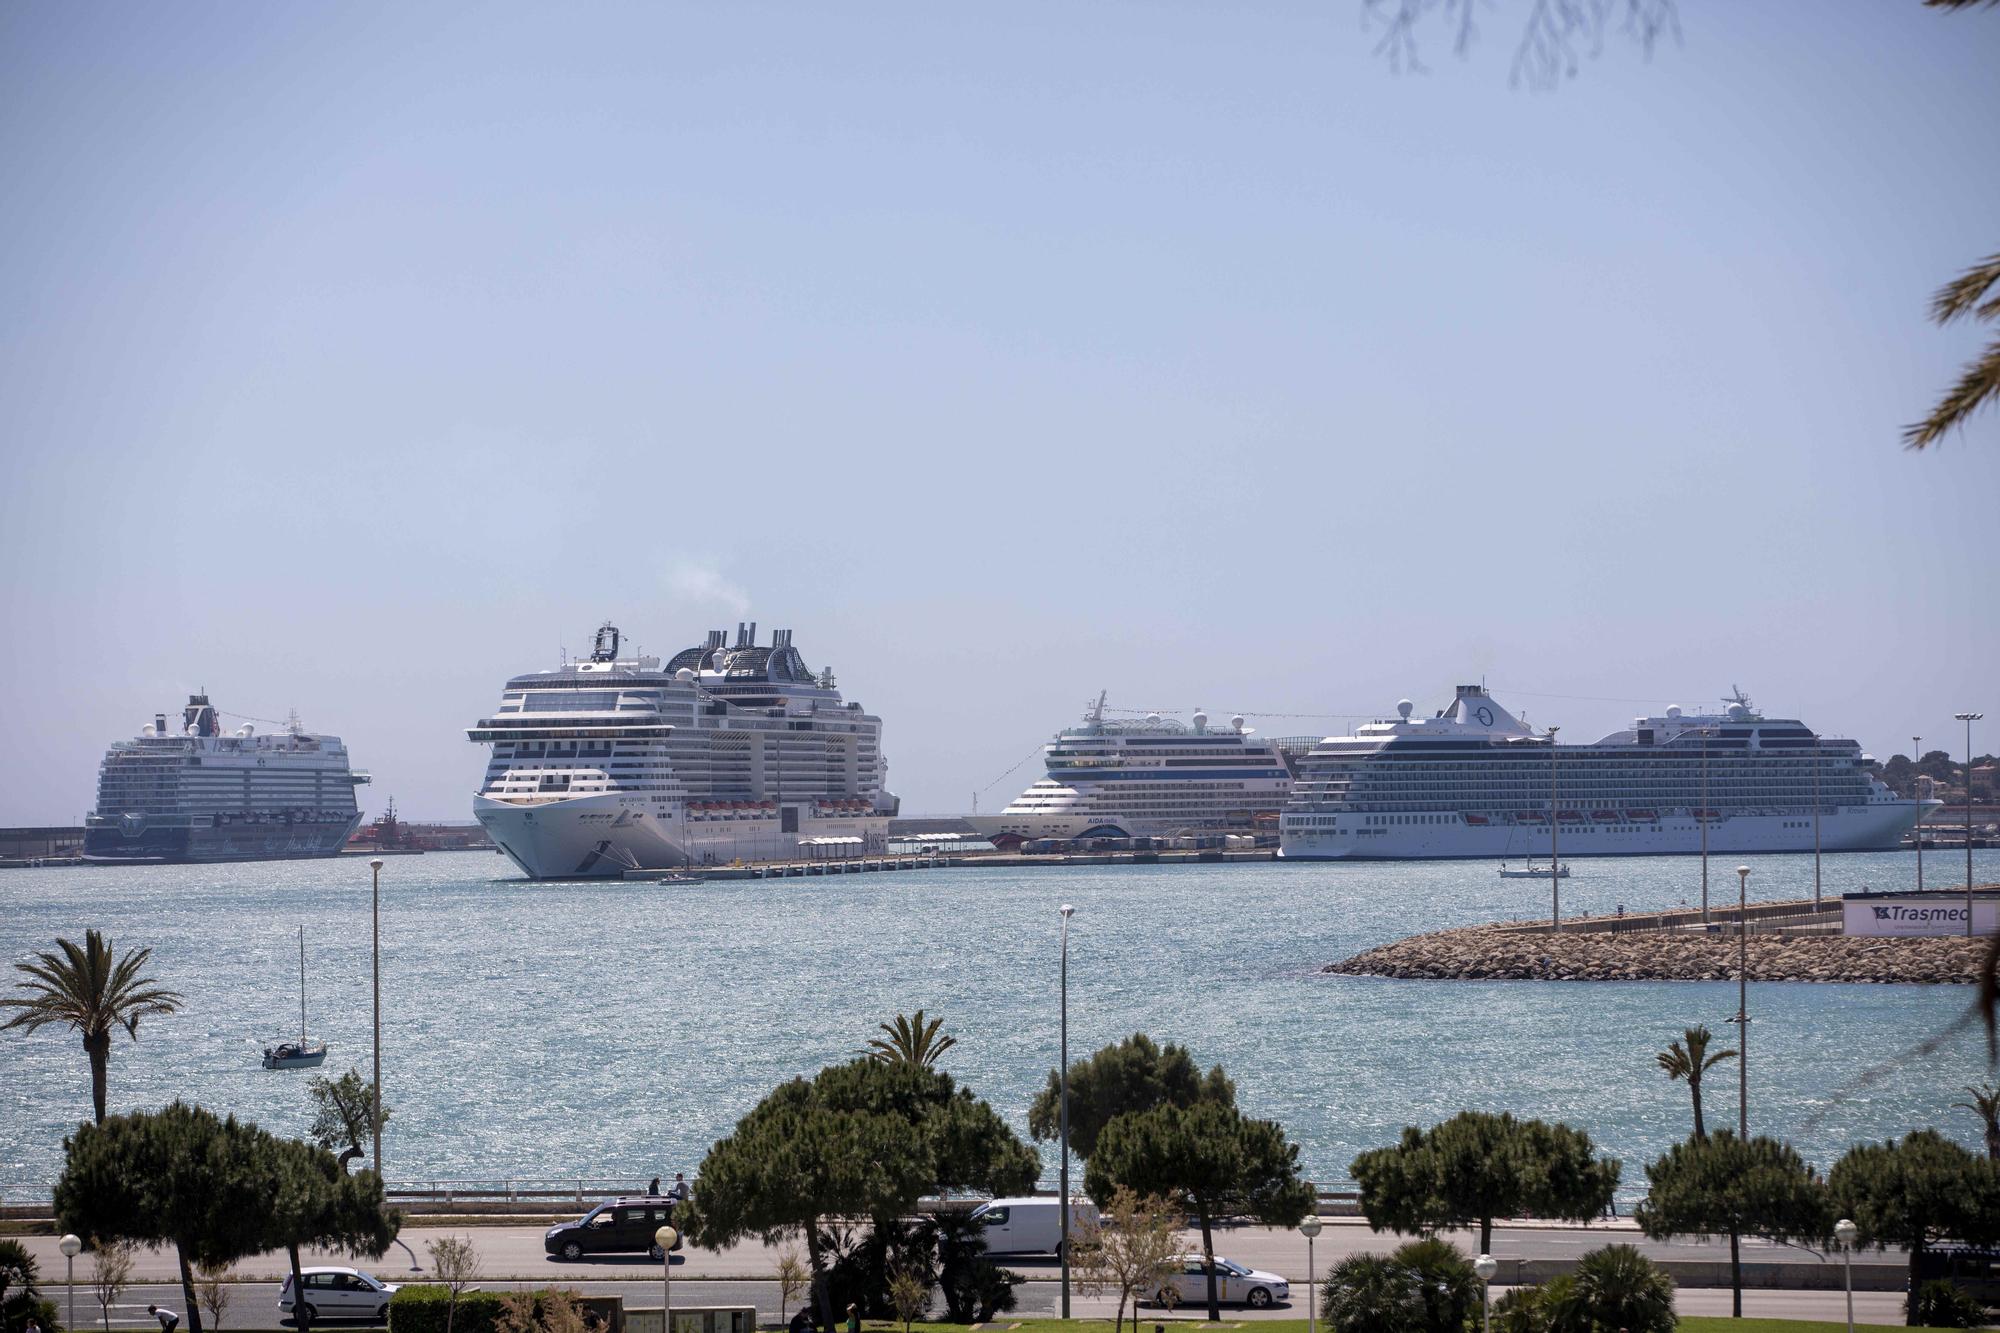 Cuatro grandes cruceros atracados en Palma este domingo